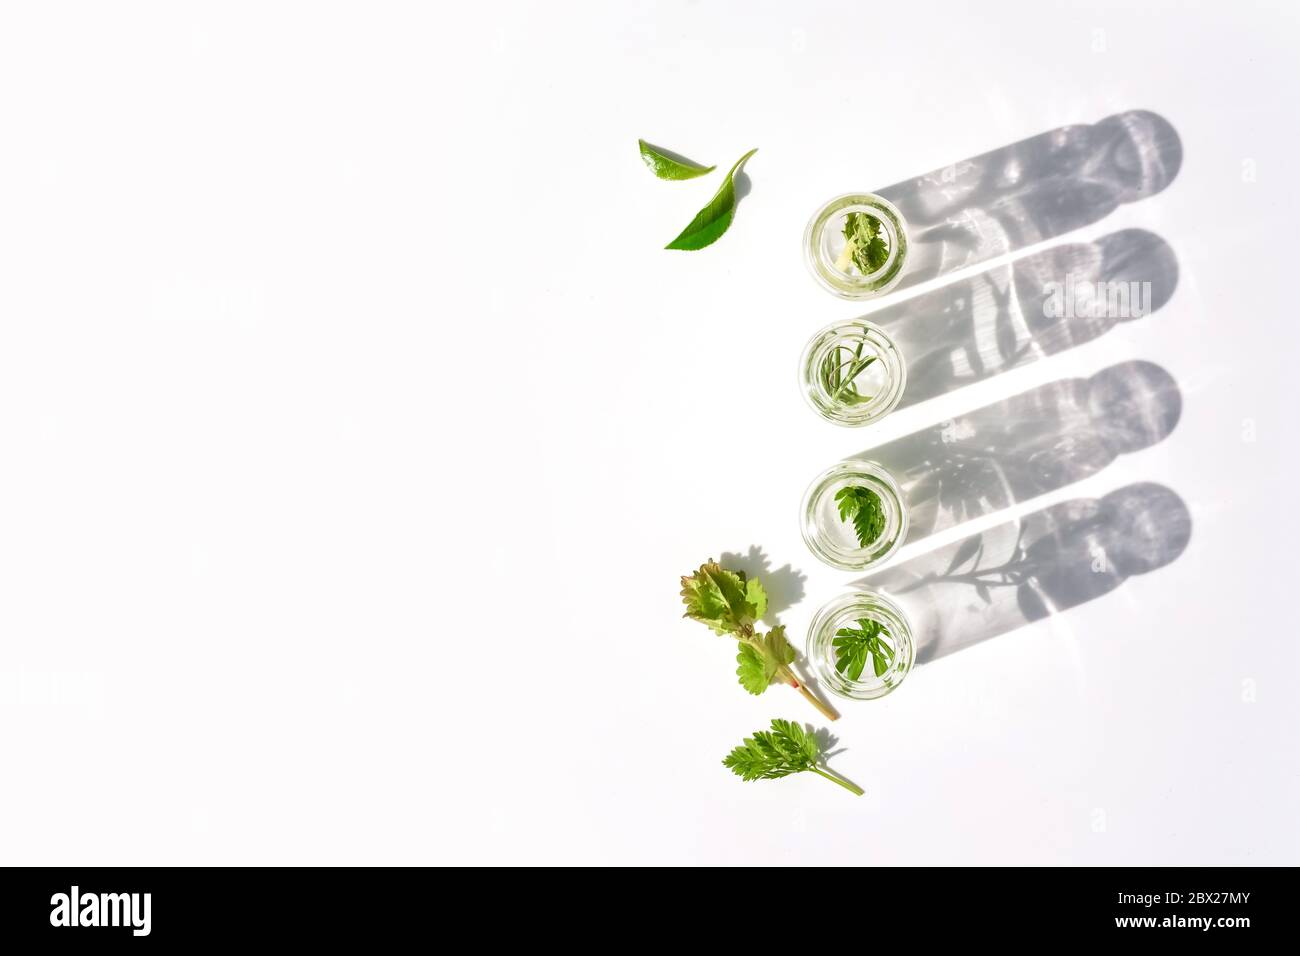 Medizinische Kräuter und Pflanzen in Laborglasflaschen auf weißem Hintergrund Stockfoto